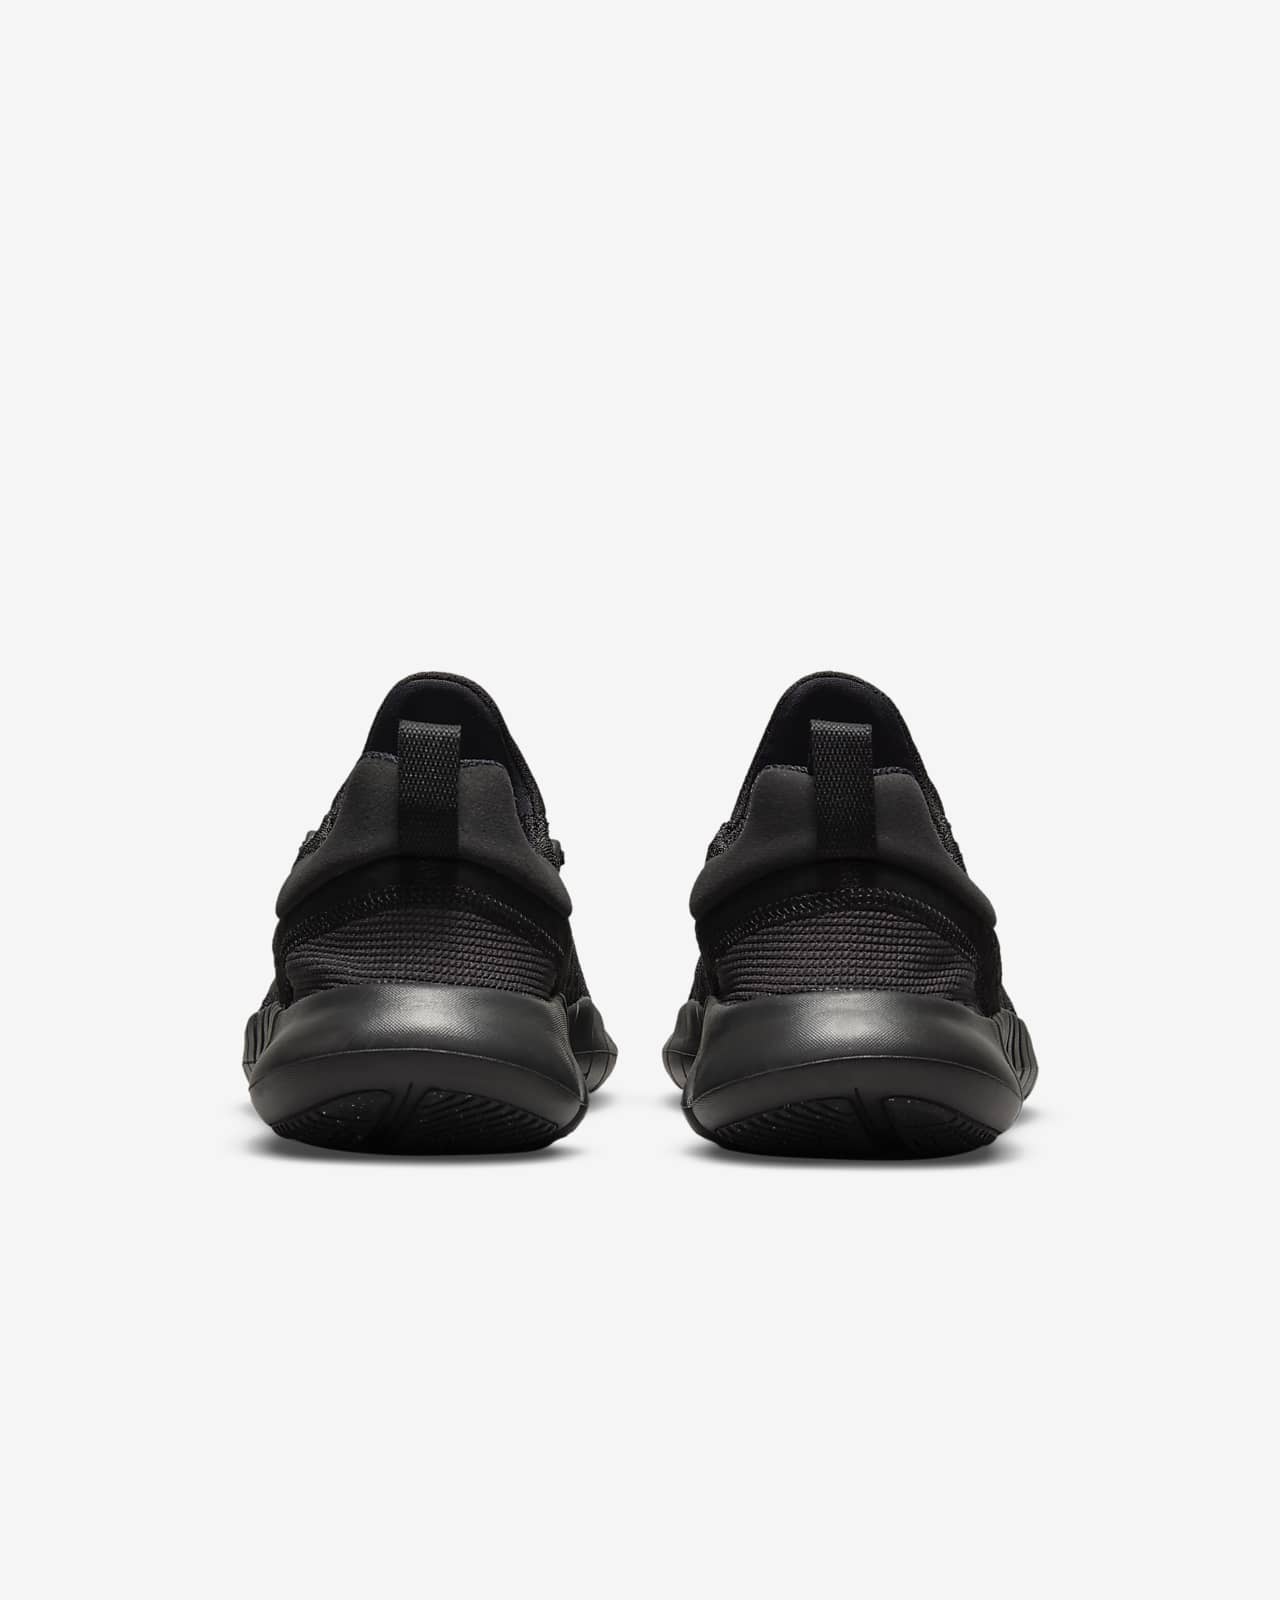 Empeorando frijoles Juventud Nike Free Run 5.0 Zapatillas de running para asfalto - Hombre. Nike ES